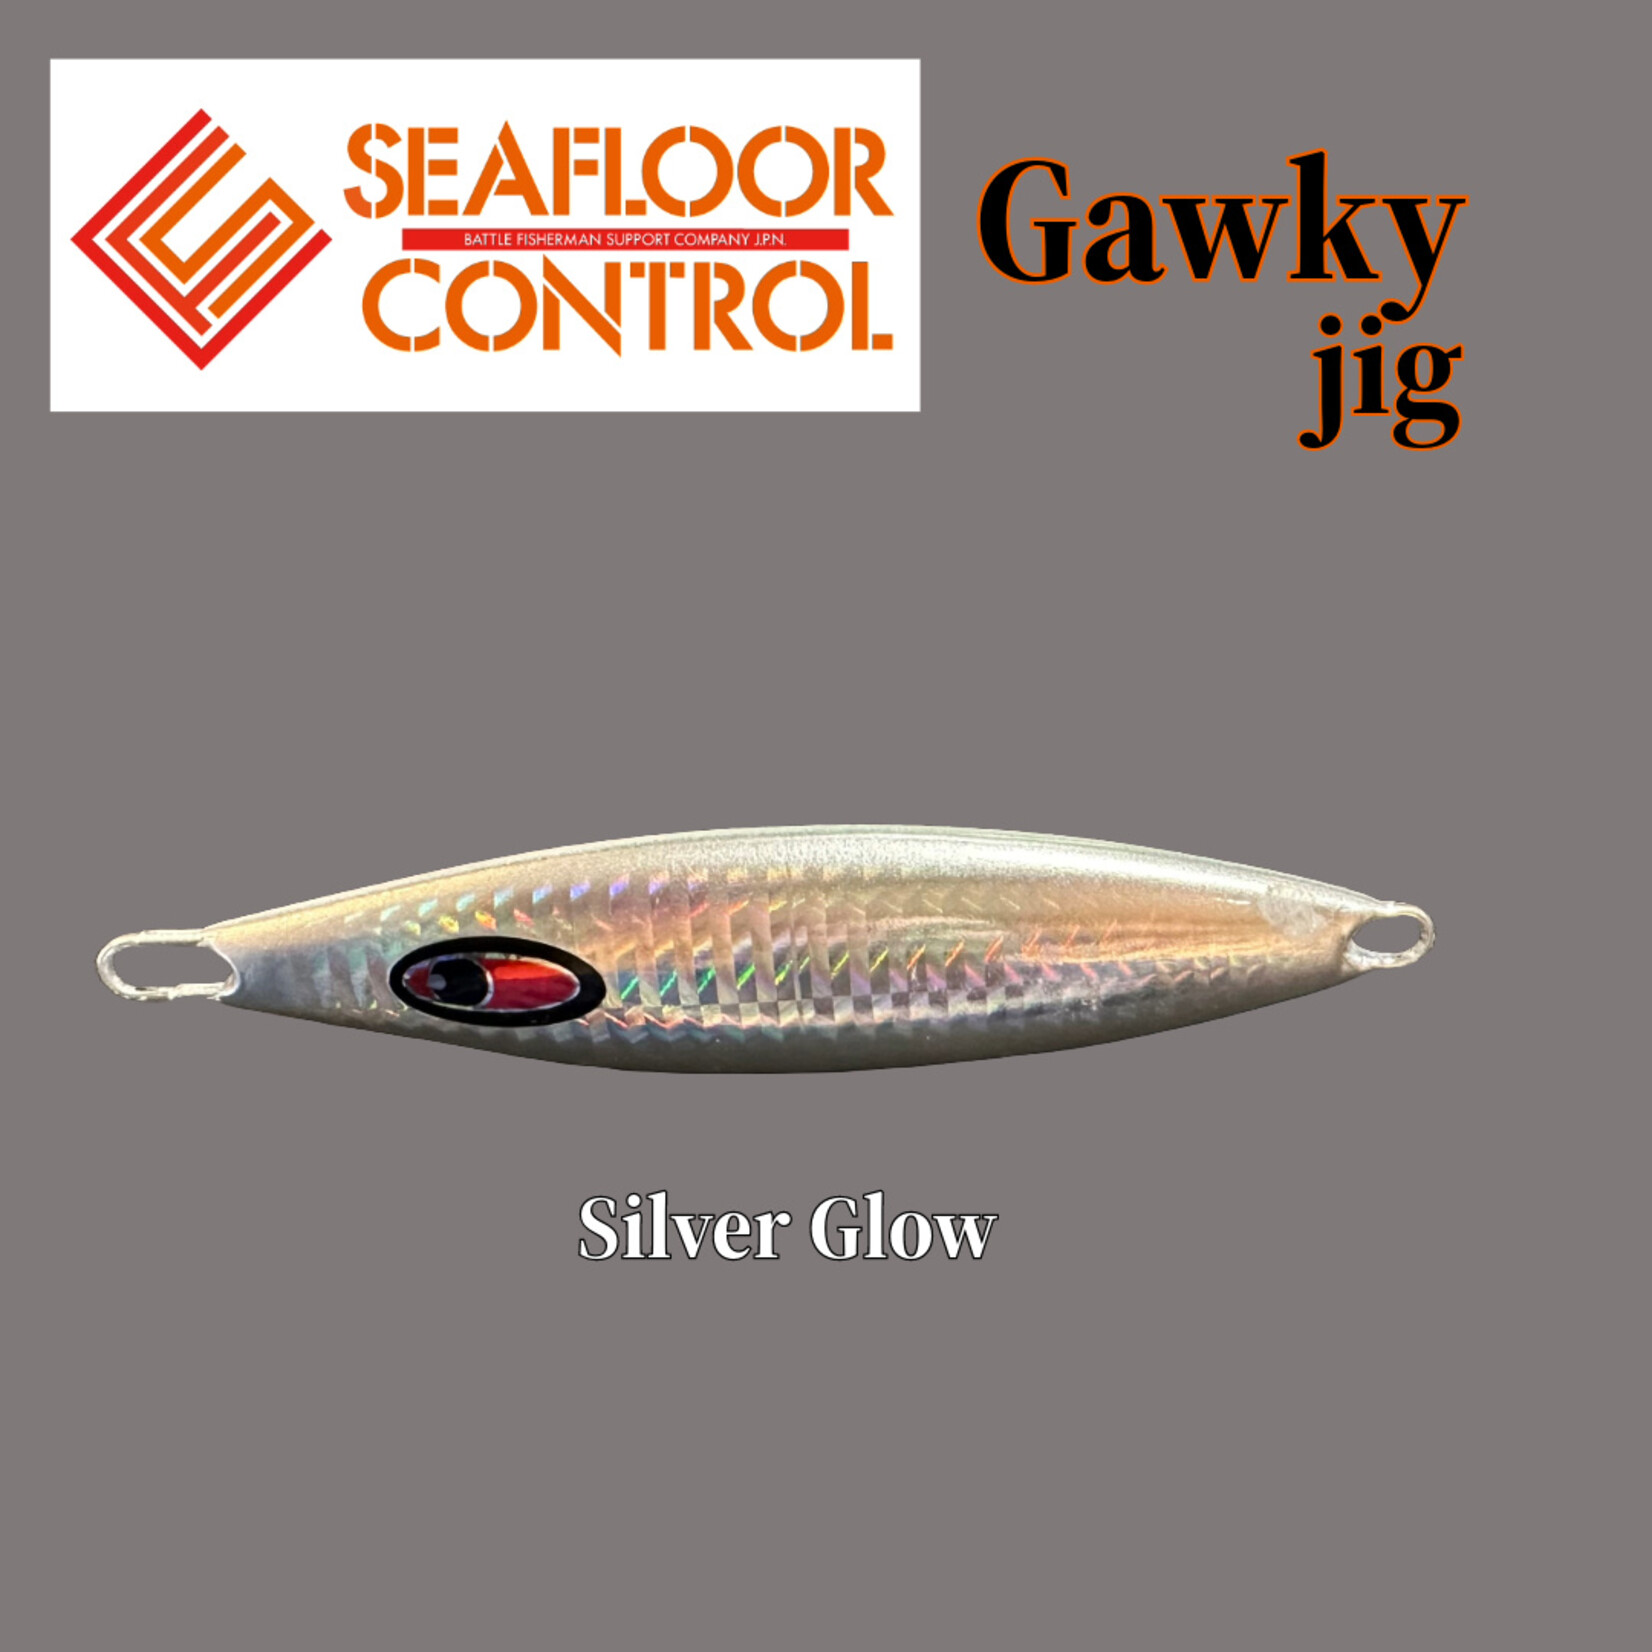 SeaFloor Control- Gawky